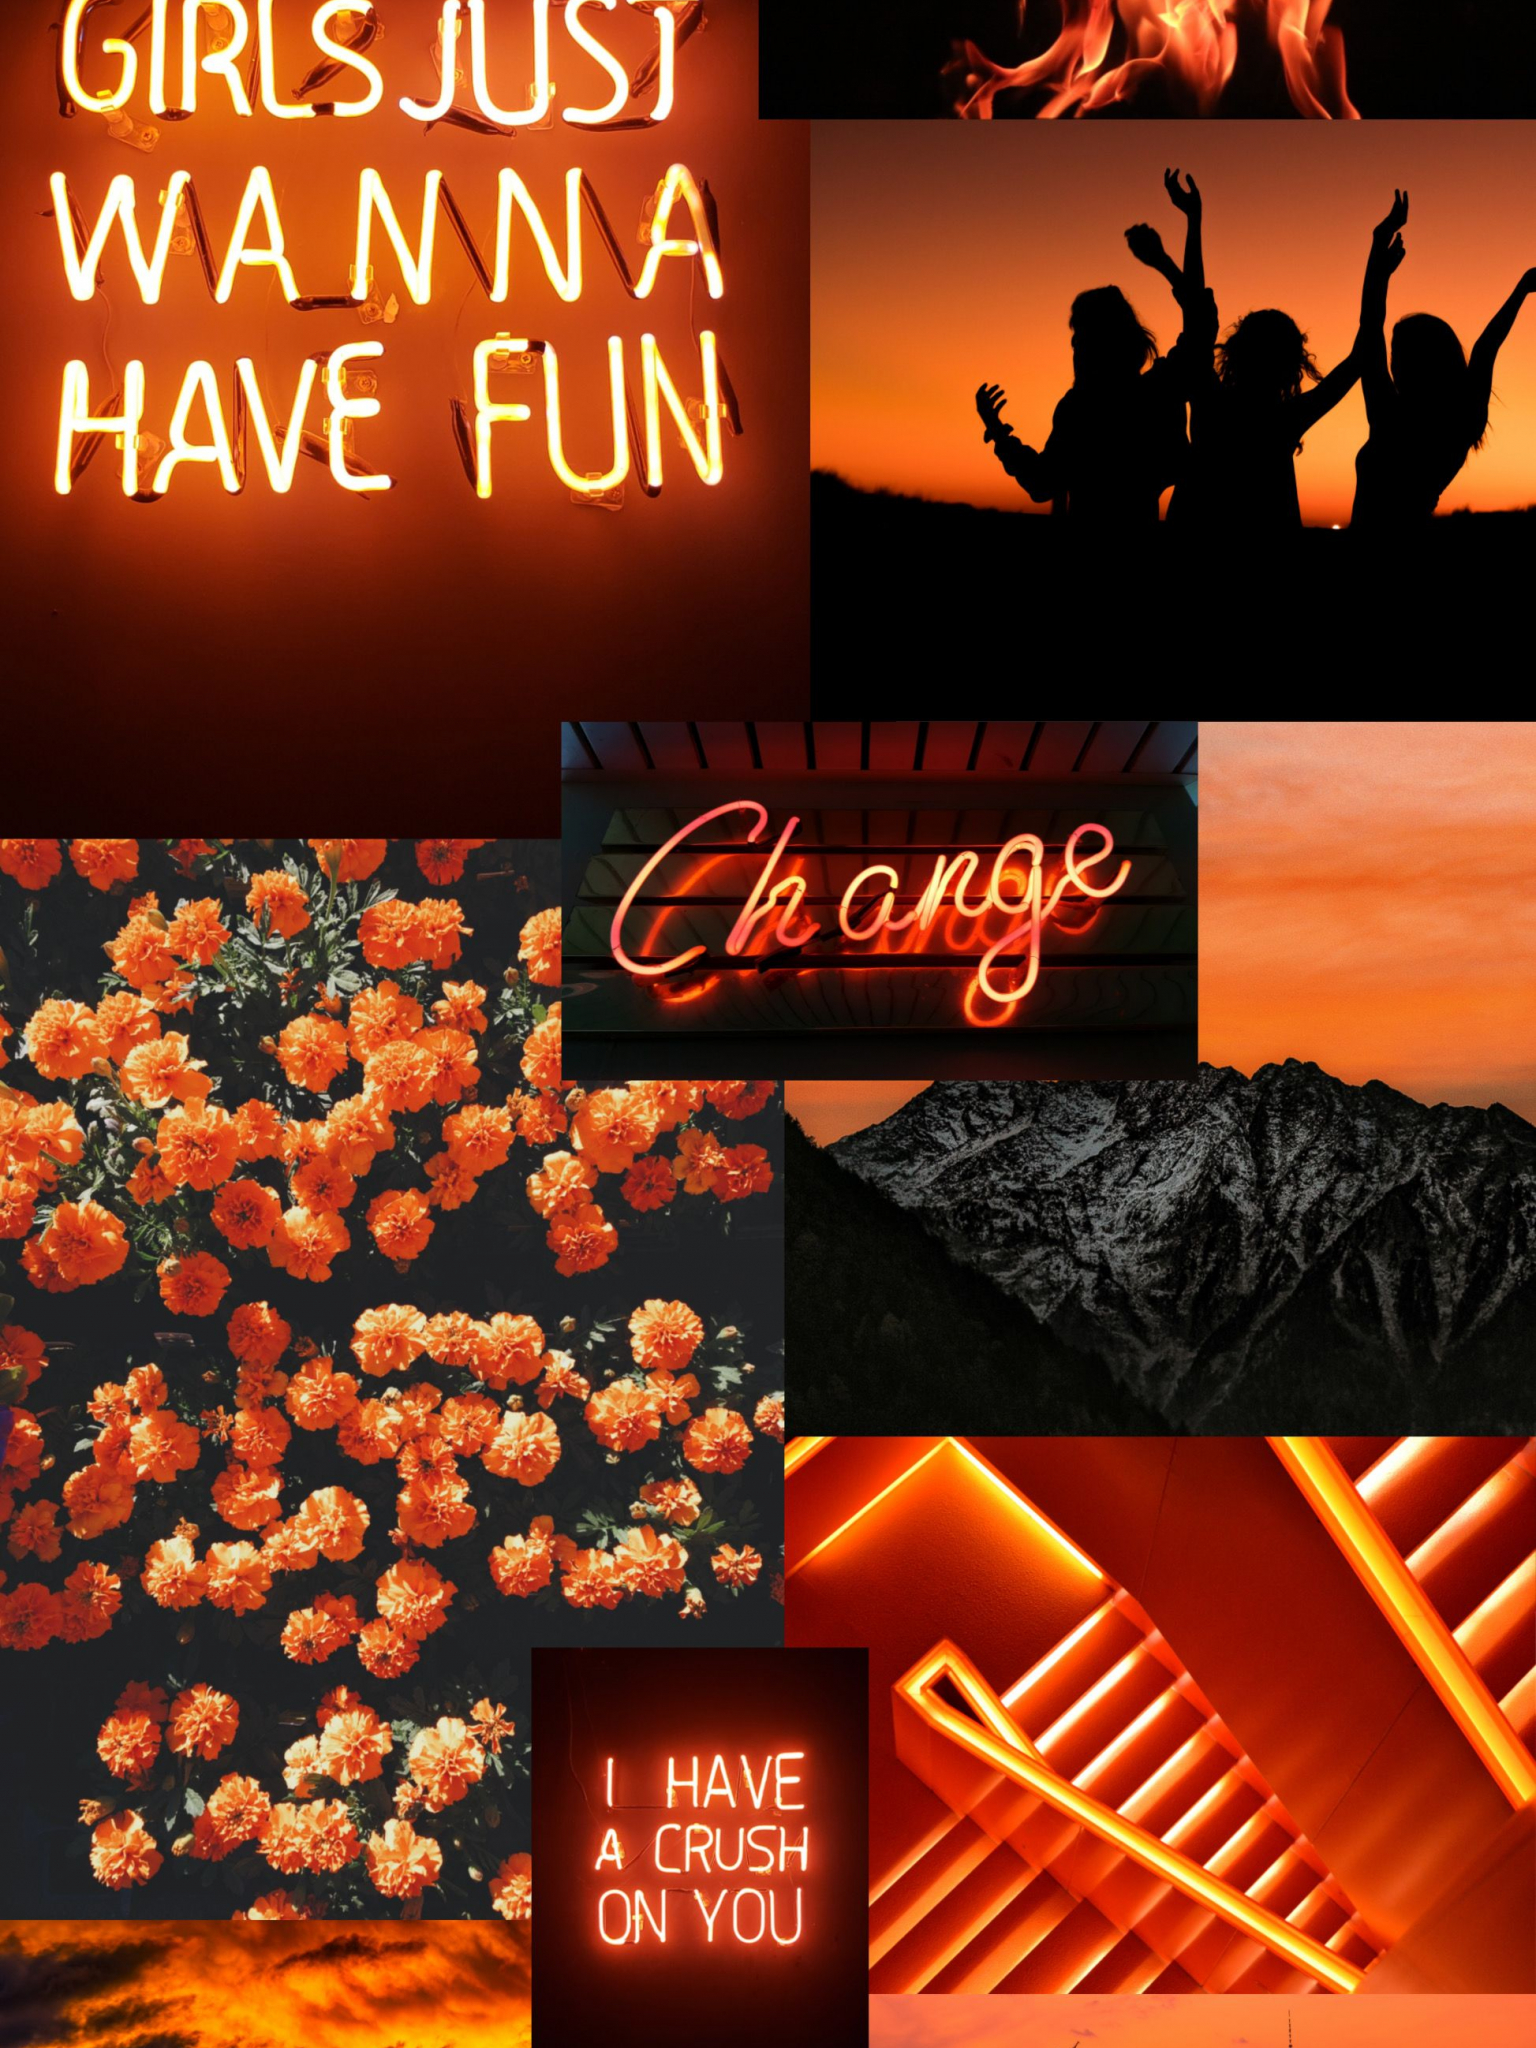 Neon Orange Iphone Wallpapers